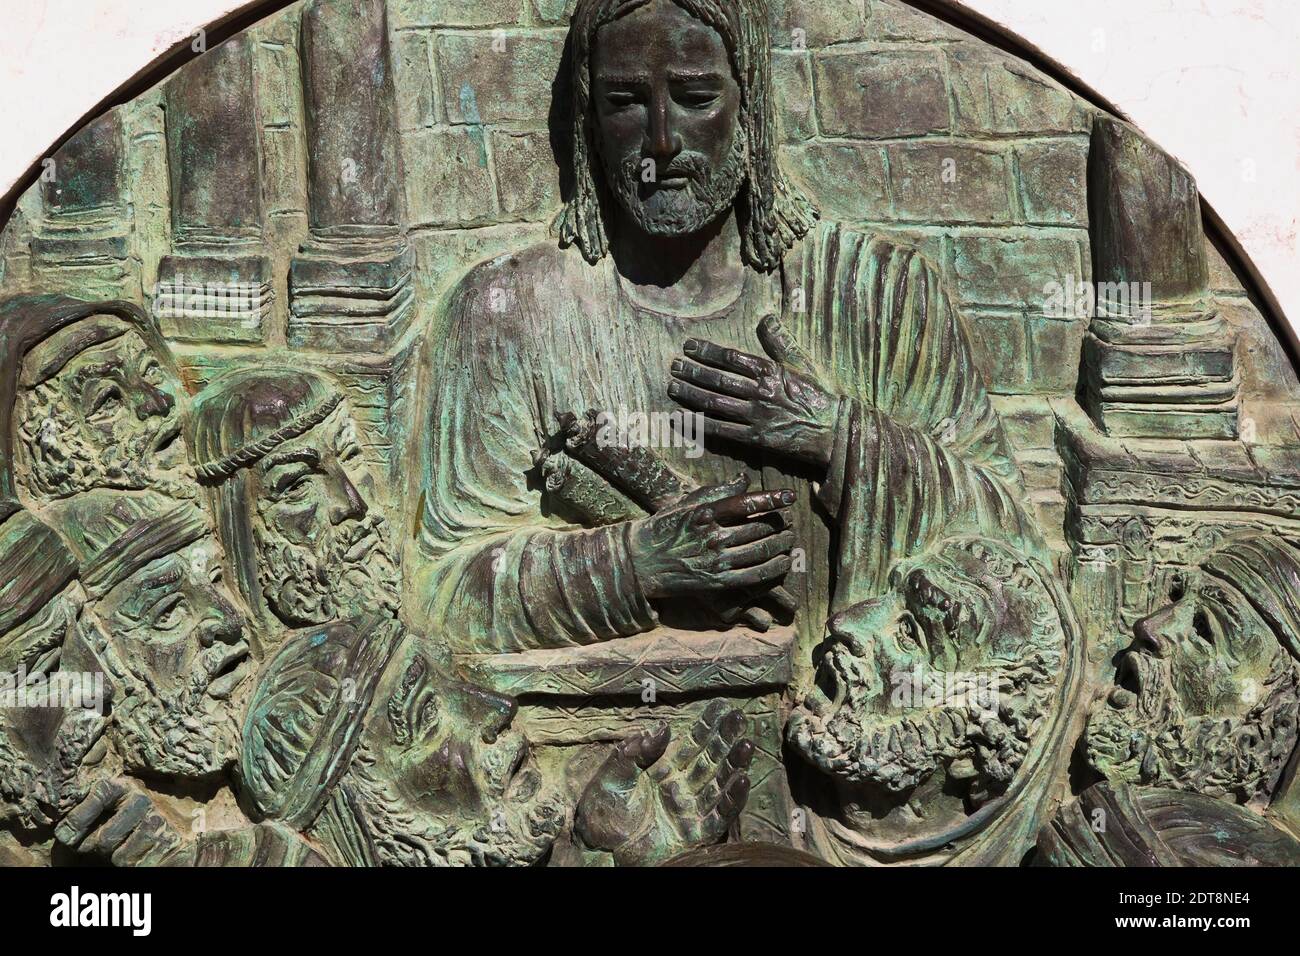 Plaque de bronze avec scène religieuse sculptée insérée dans la base du monument en marbre dans la cour intérieure de l'église de l'Annonciation, Nazareth, Israël. Banque D'Images